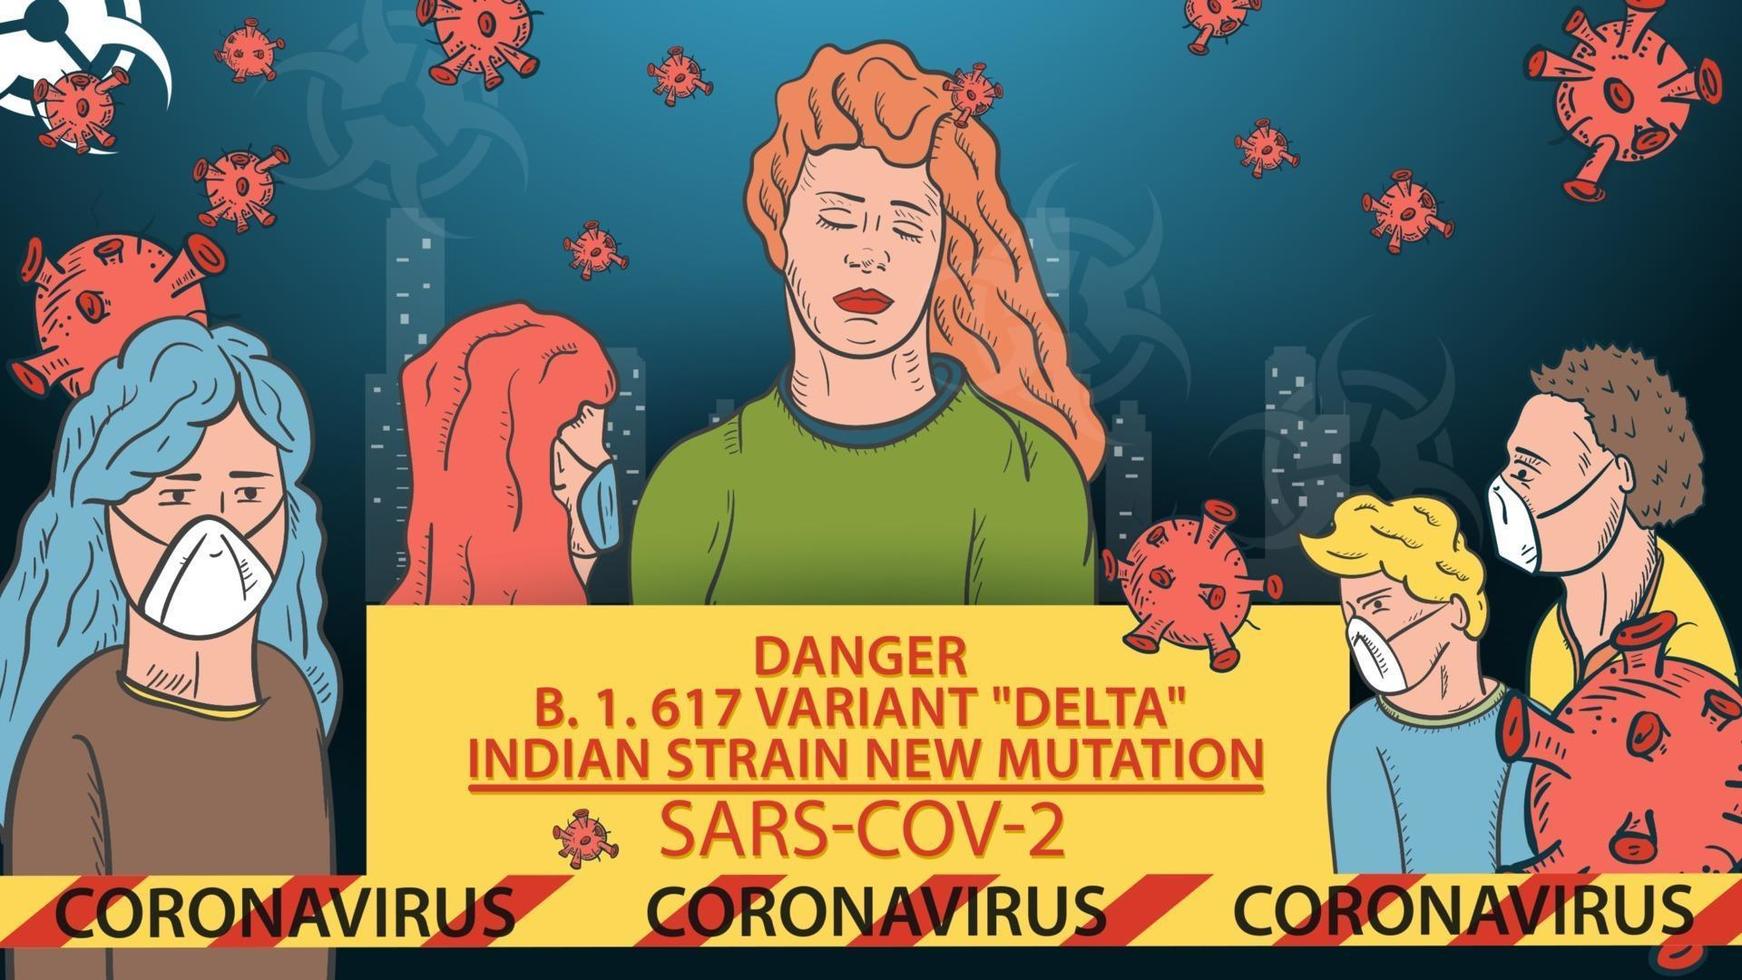 Bannerillustration für Designdesign ein neuer Stamm des Koronavirus sars-cov-2 maskierte Menschen auf dem Hintergrund der Stadt ein Schild mit dem Namen und einem Signalband vektor